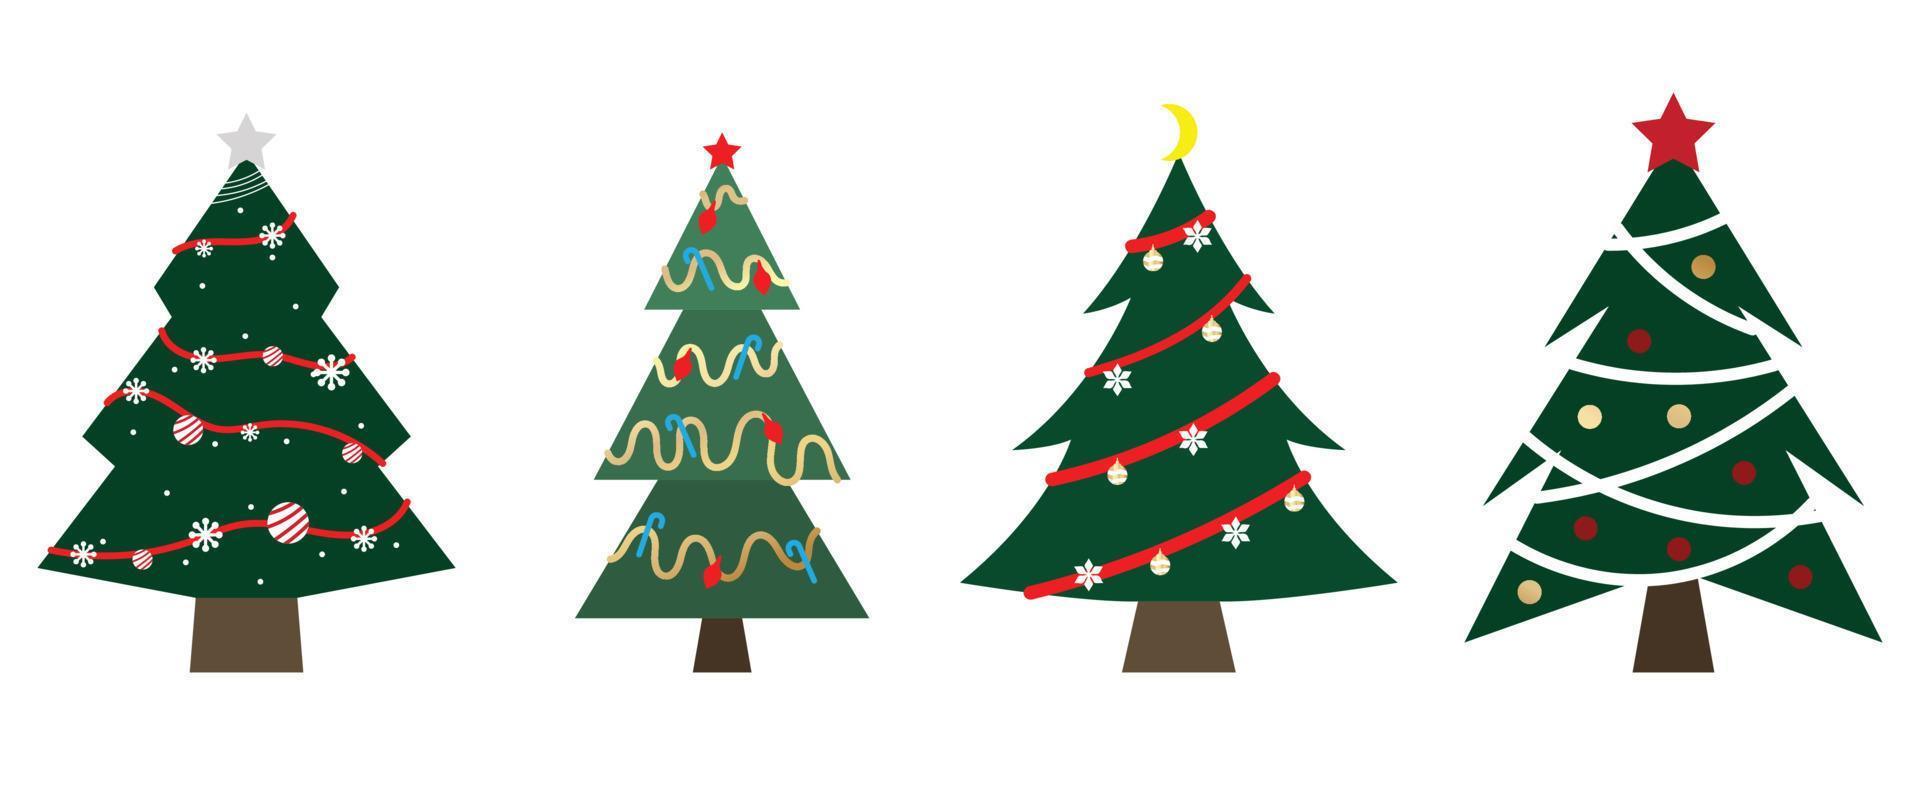 conjunto de vectores de árboles de navidad decorados. colección de árboles de navidad ornamentales con guirnaldas, oropel, adornos, estrella sobre fondo blanco. ilustración de diseño para decoración, tarjeta, pegatina, afiche.